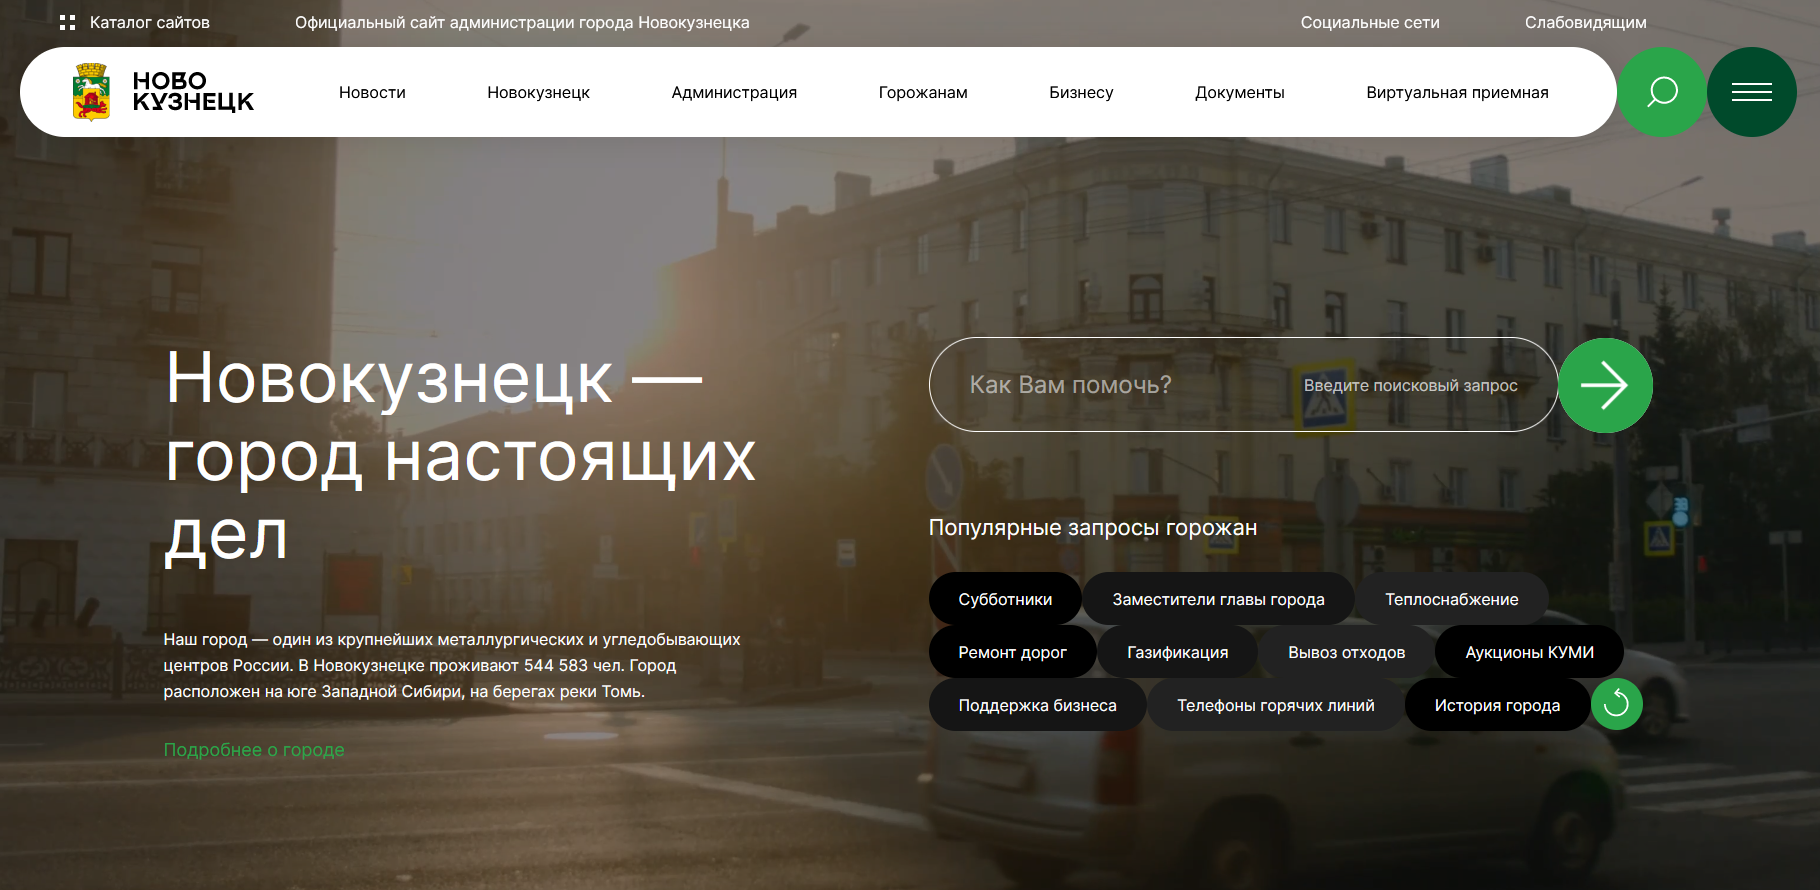 В Новокузнецке мэрия запустила обновлённый сайт